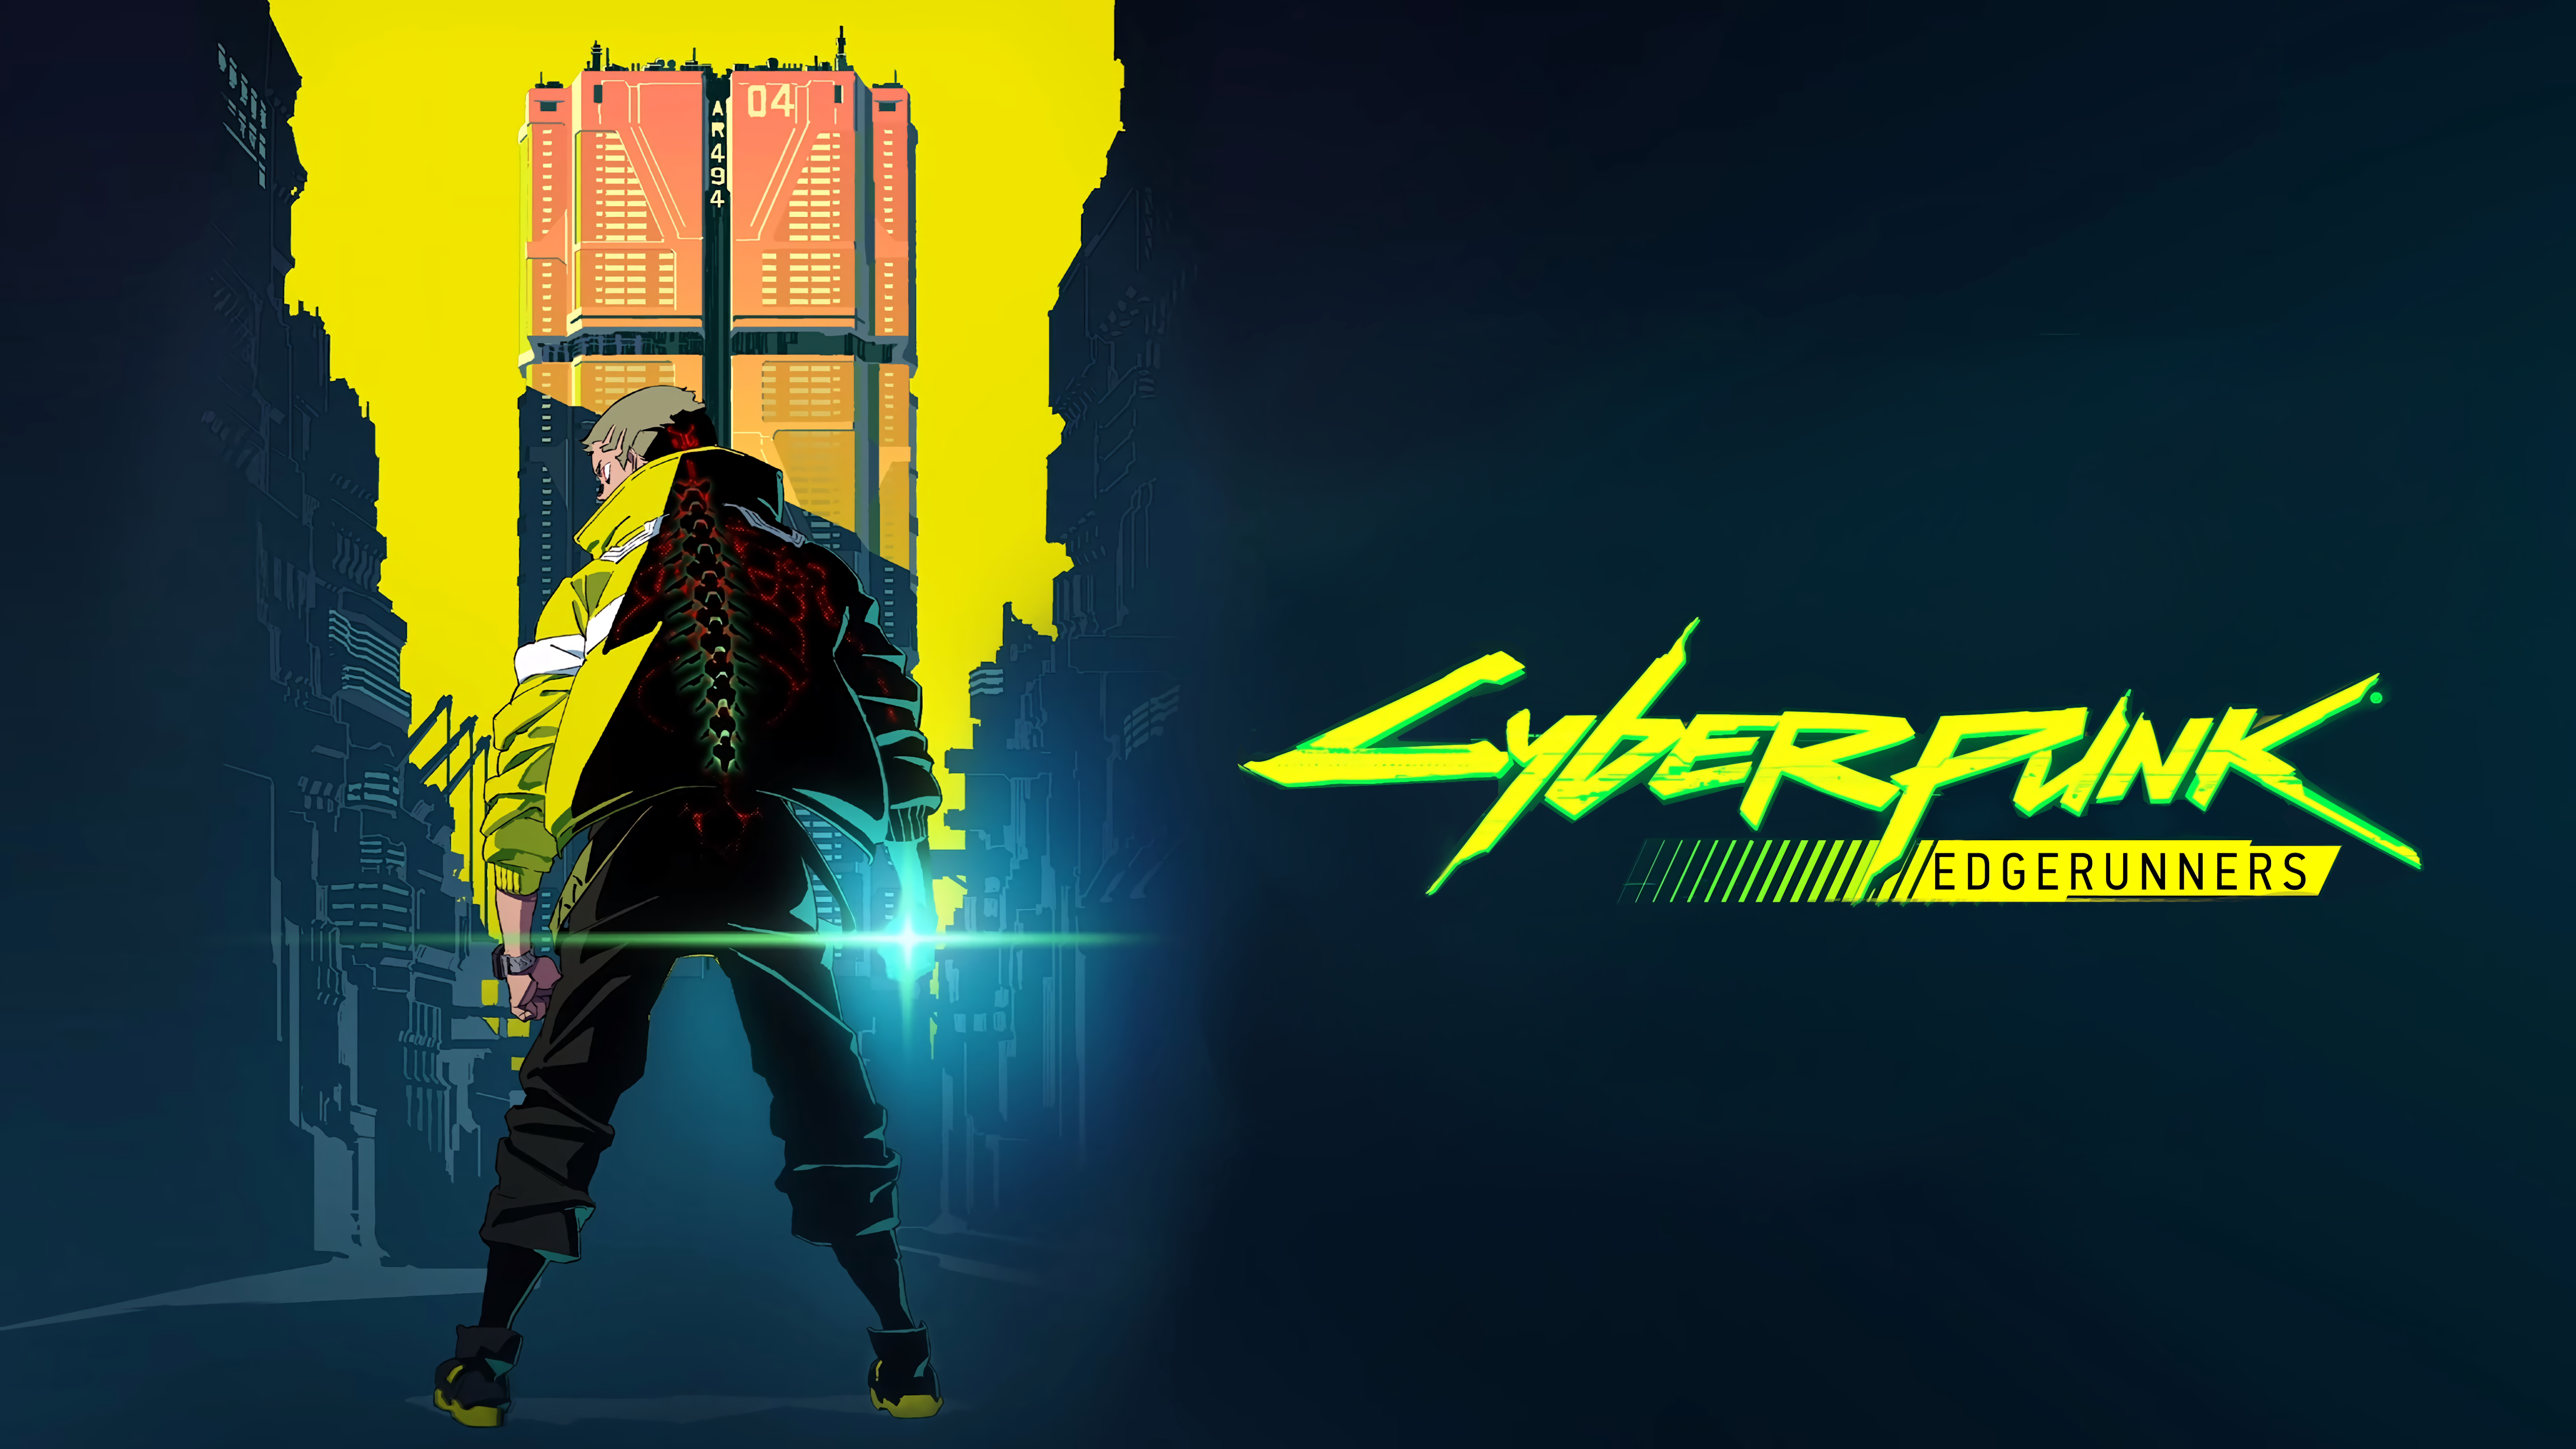 Cyberpunk: Edgerunners HD Wallpaper and Background